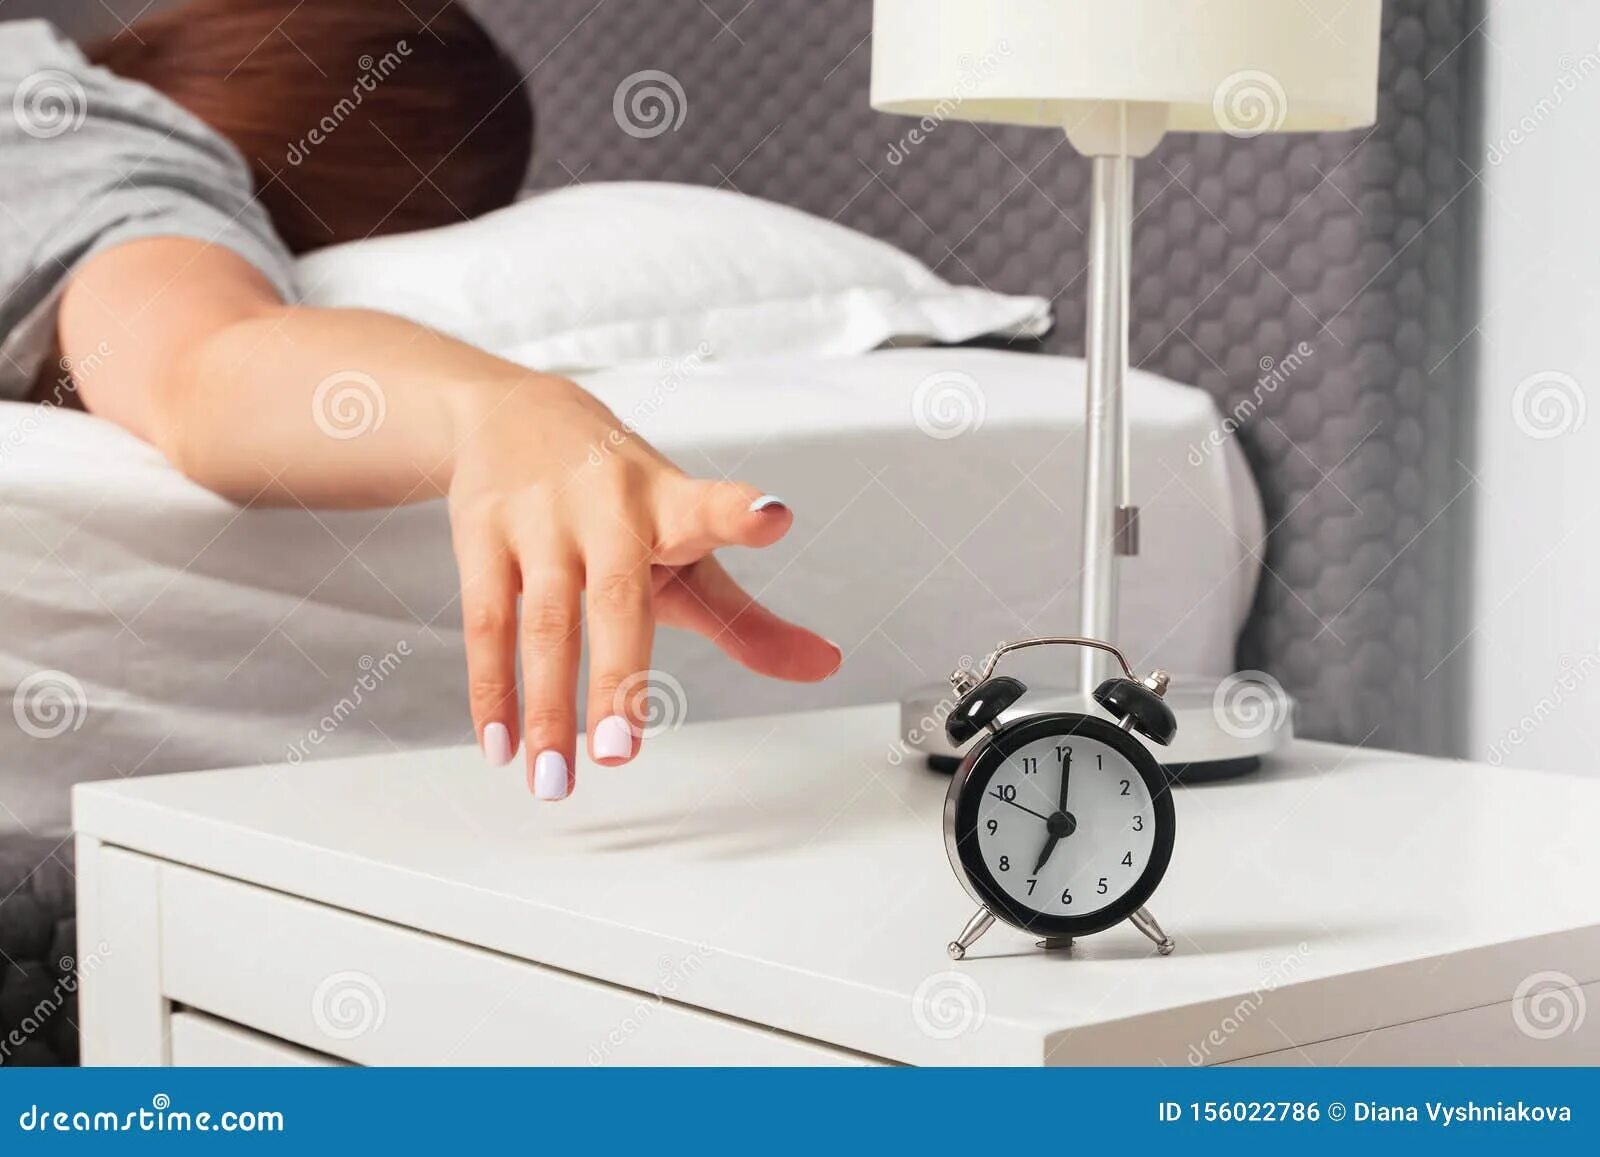 Включи утренний утренний будильник. Будильник на тумбочке. Выключает будильник. Рука выключает будильник. Будильник на руке.